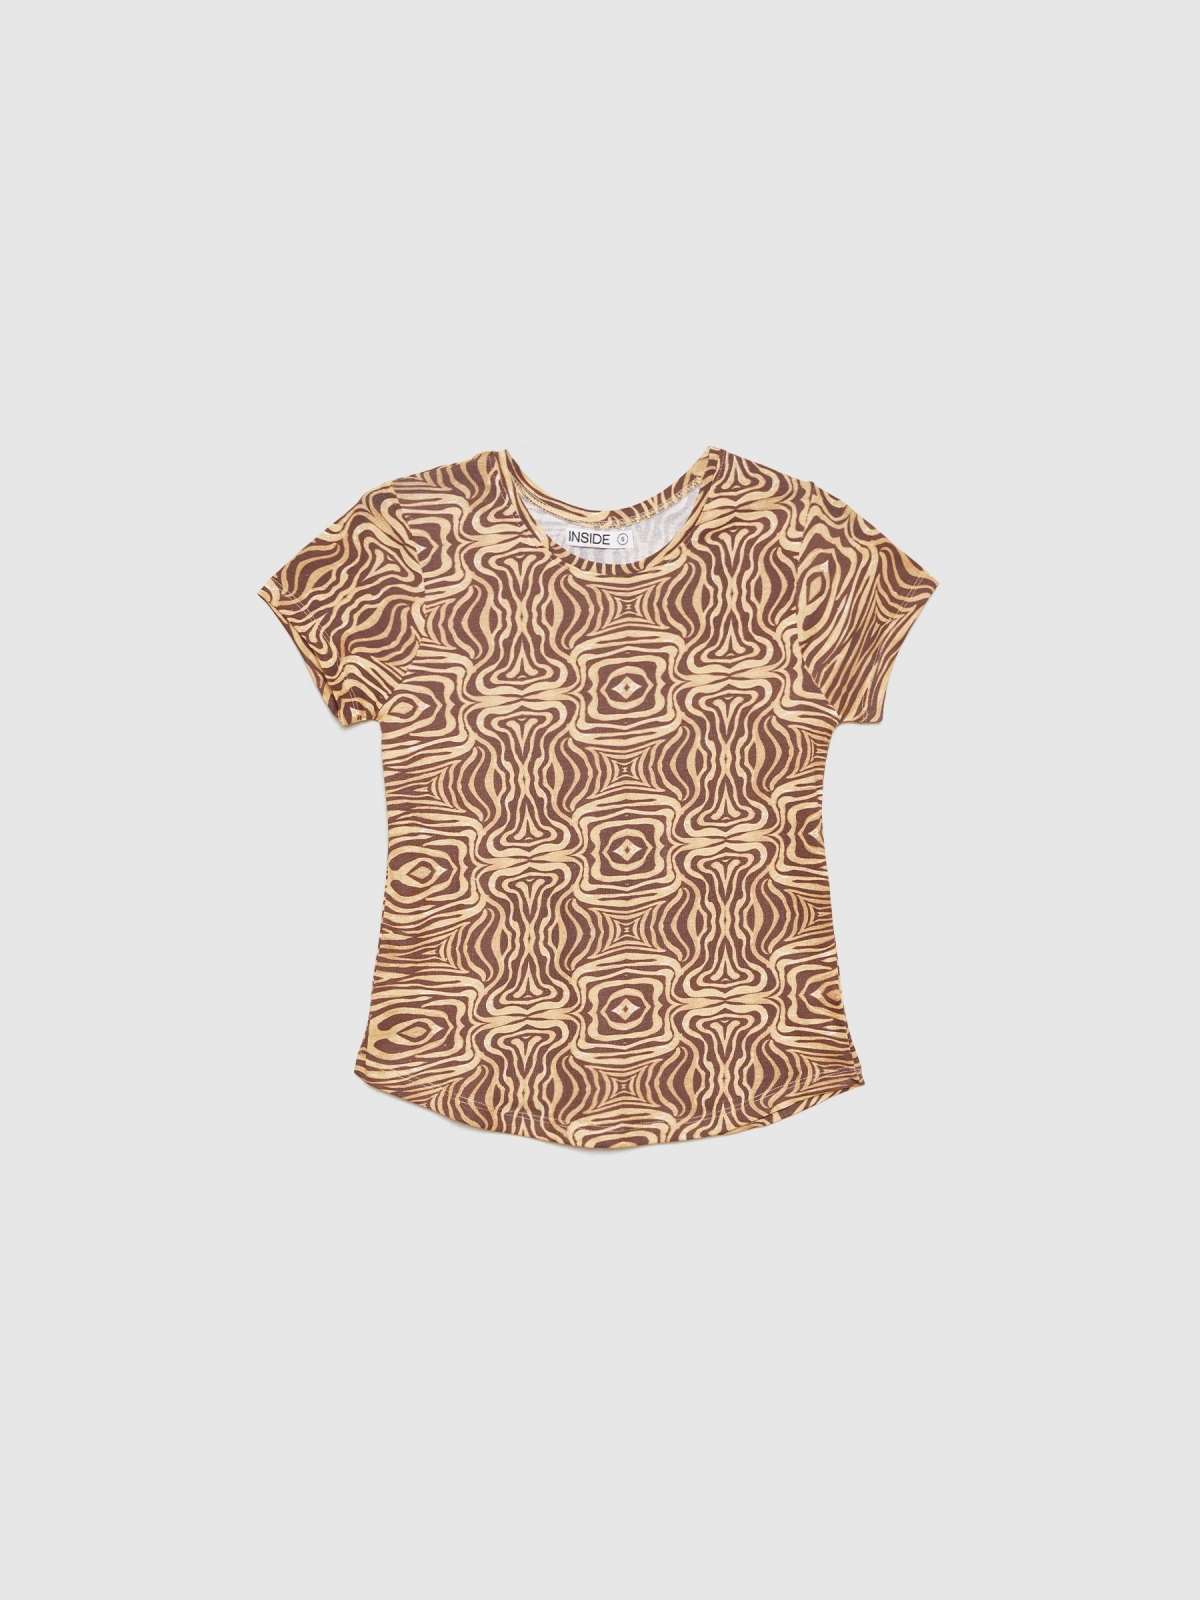  Camiseta animal print psicodélico marrón